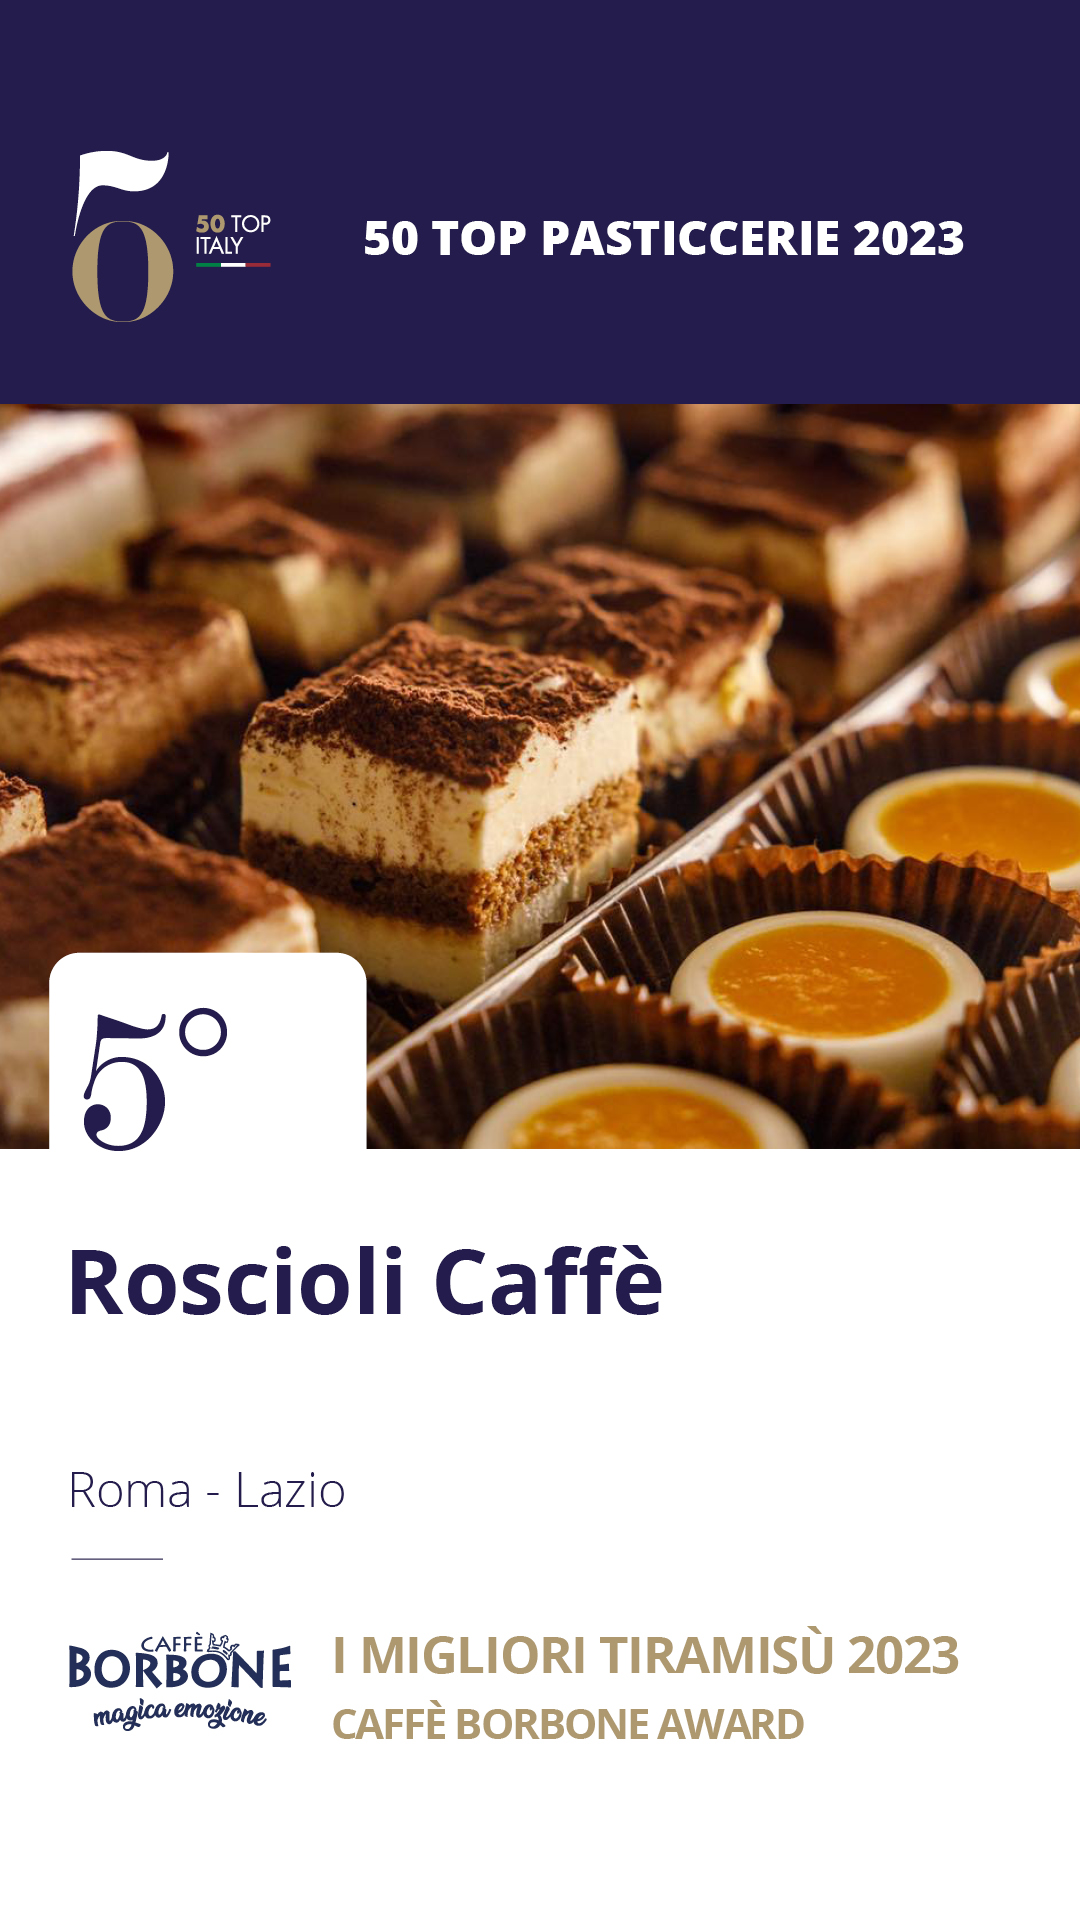 5. Roscioli Caffè – Roma, Lazio